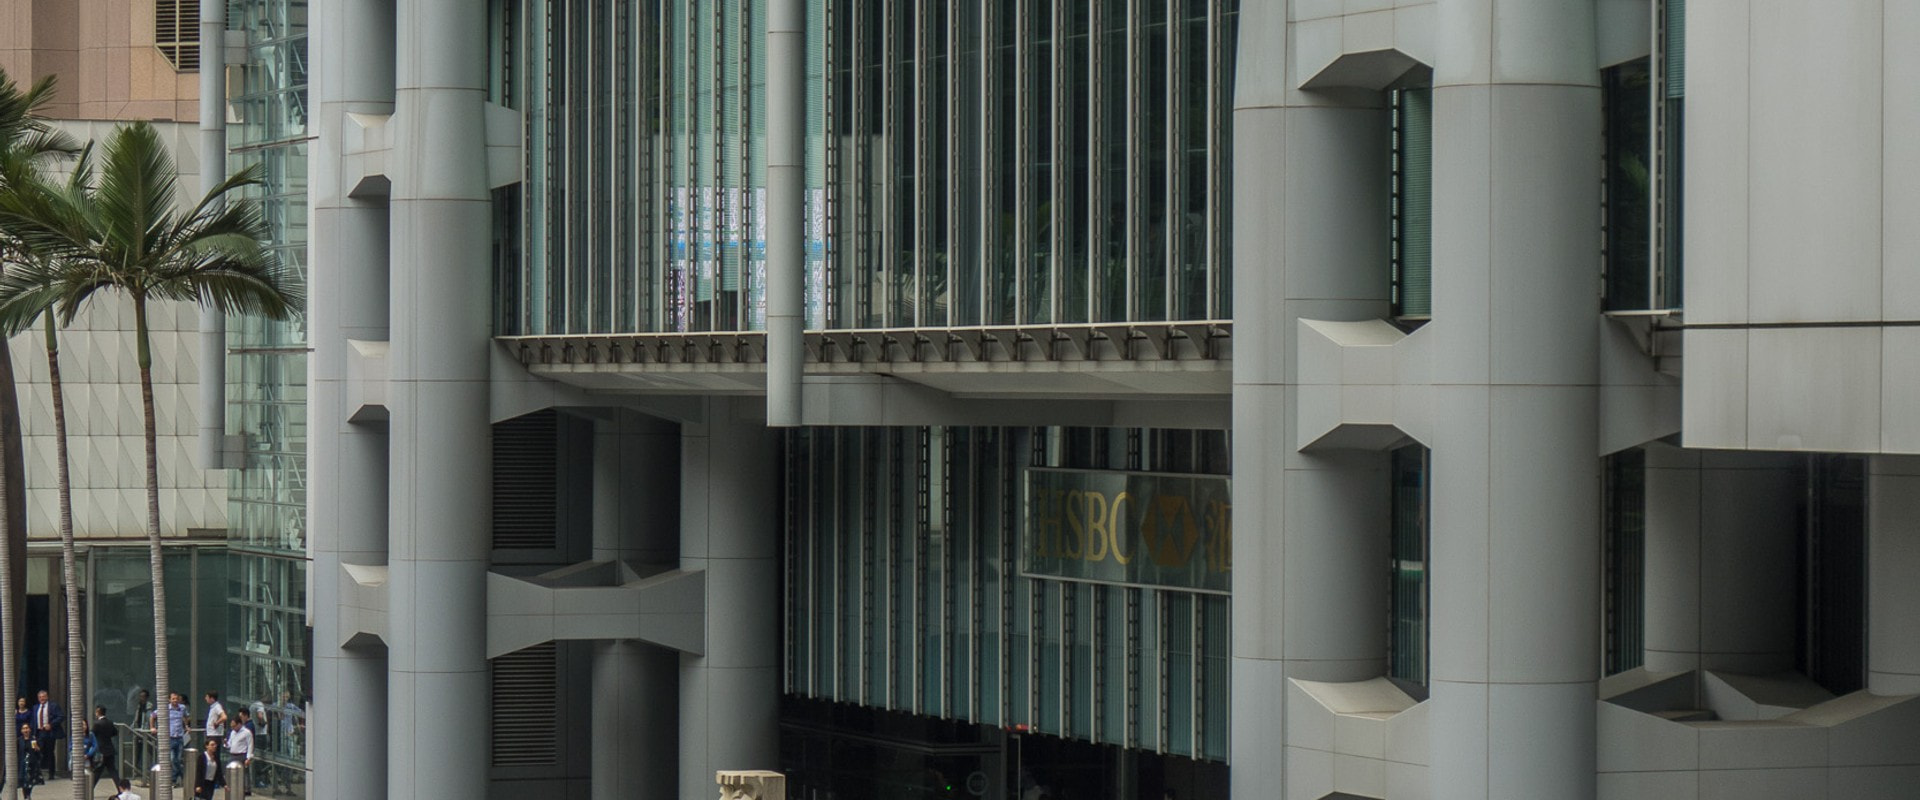 Foster S Hong Kong Hsbc Building Is A Revolutionary High Tech